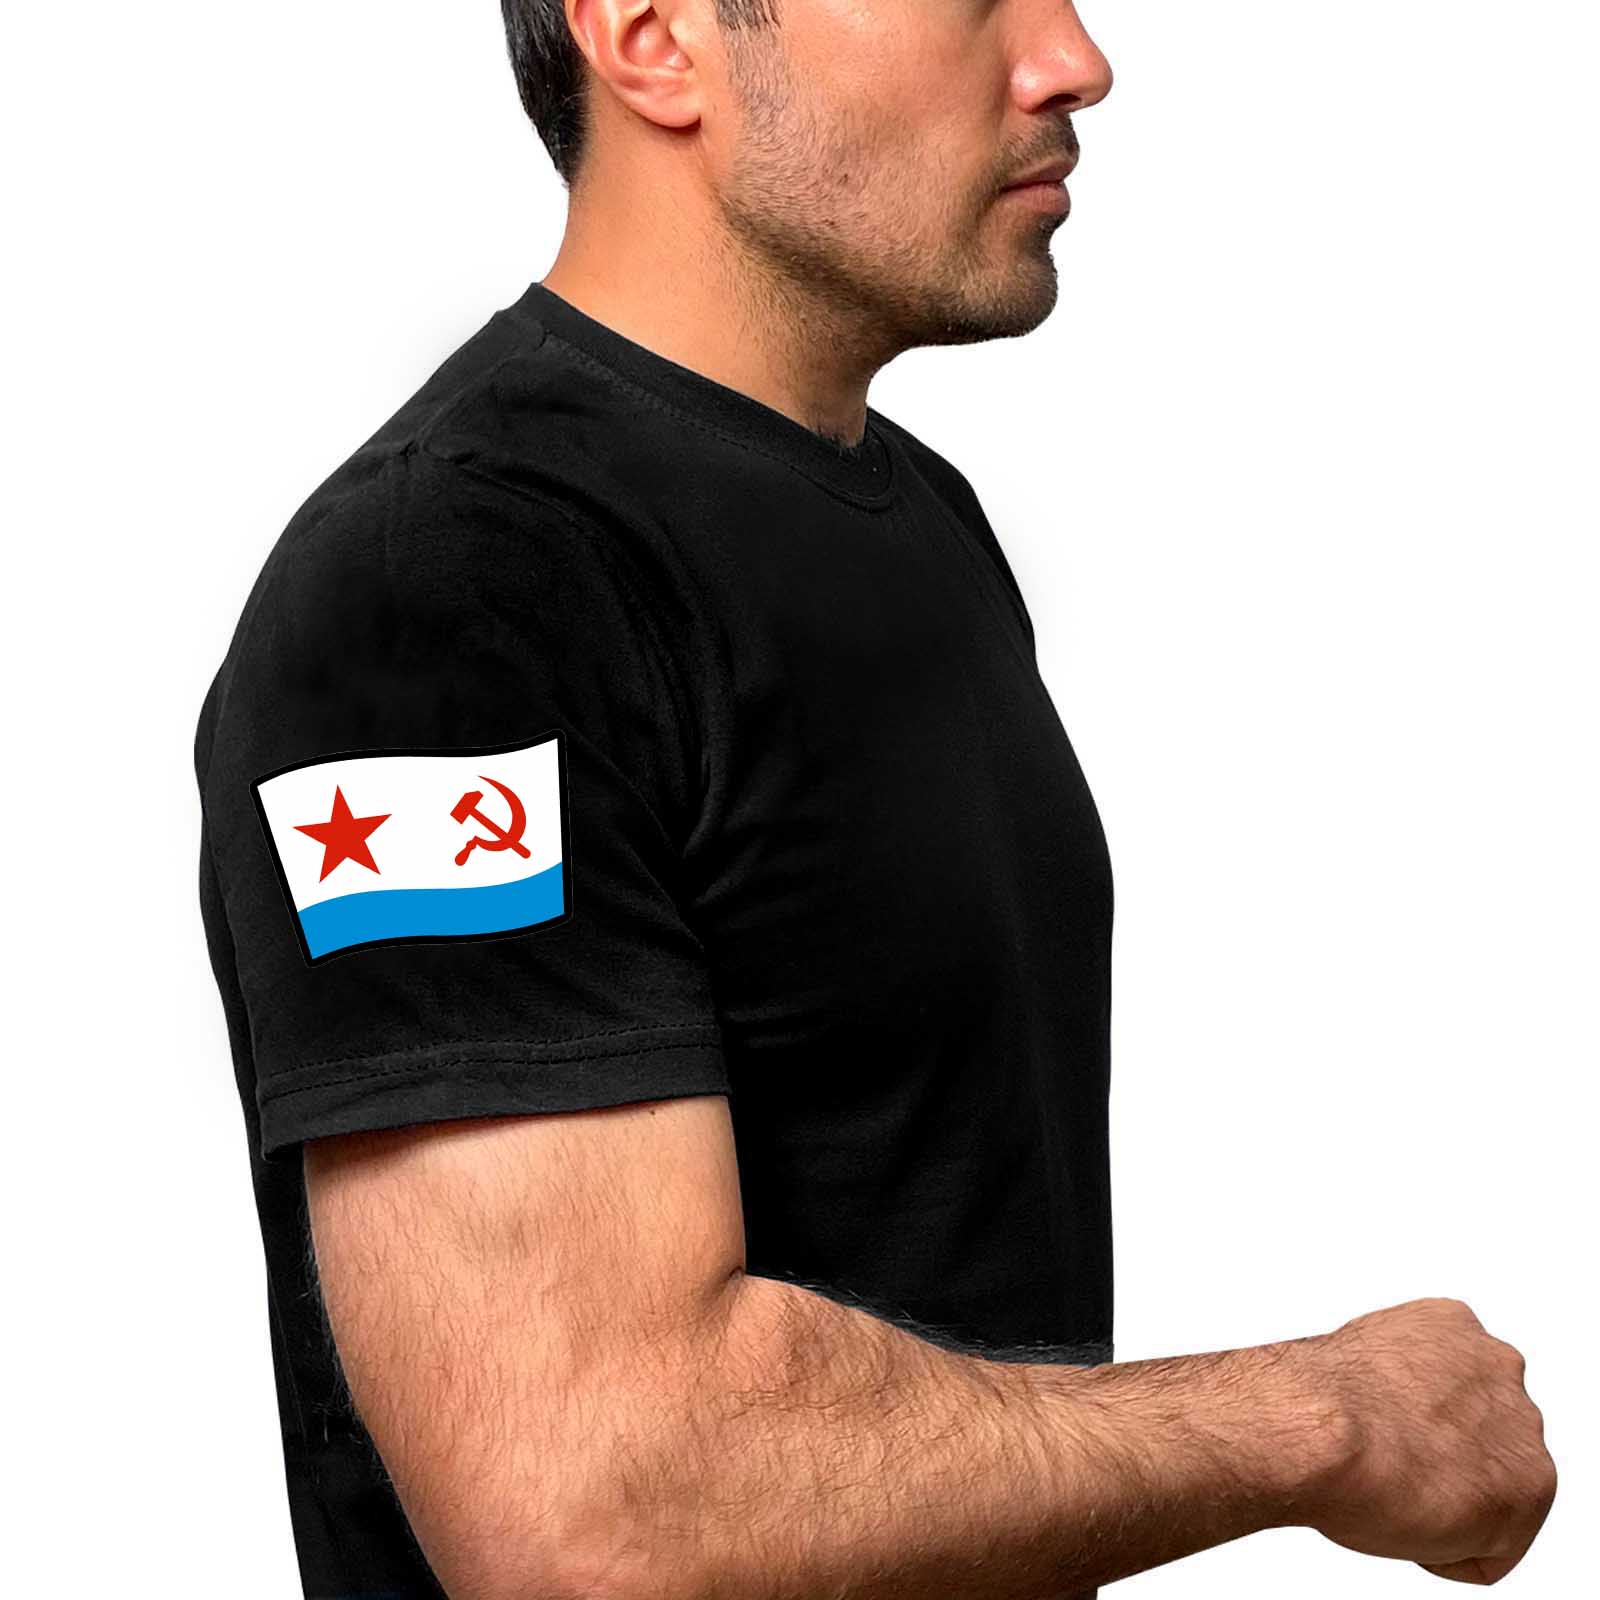 Чёрная футболка с флагом ВМФ СССР на рукаве